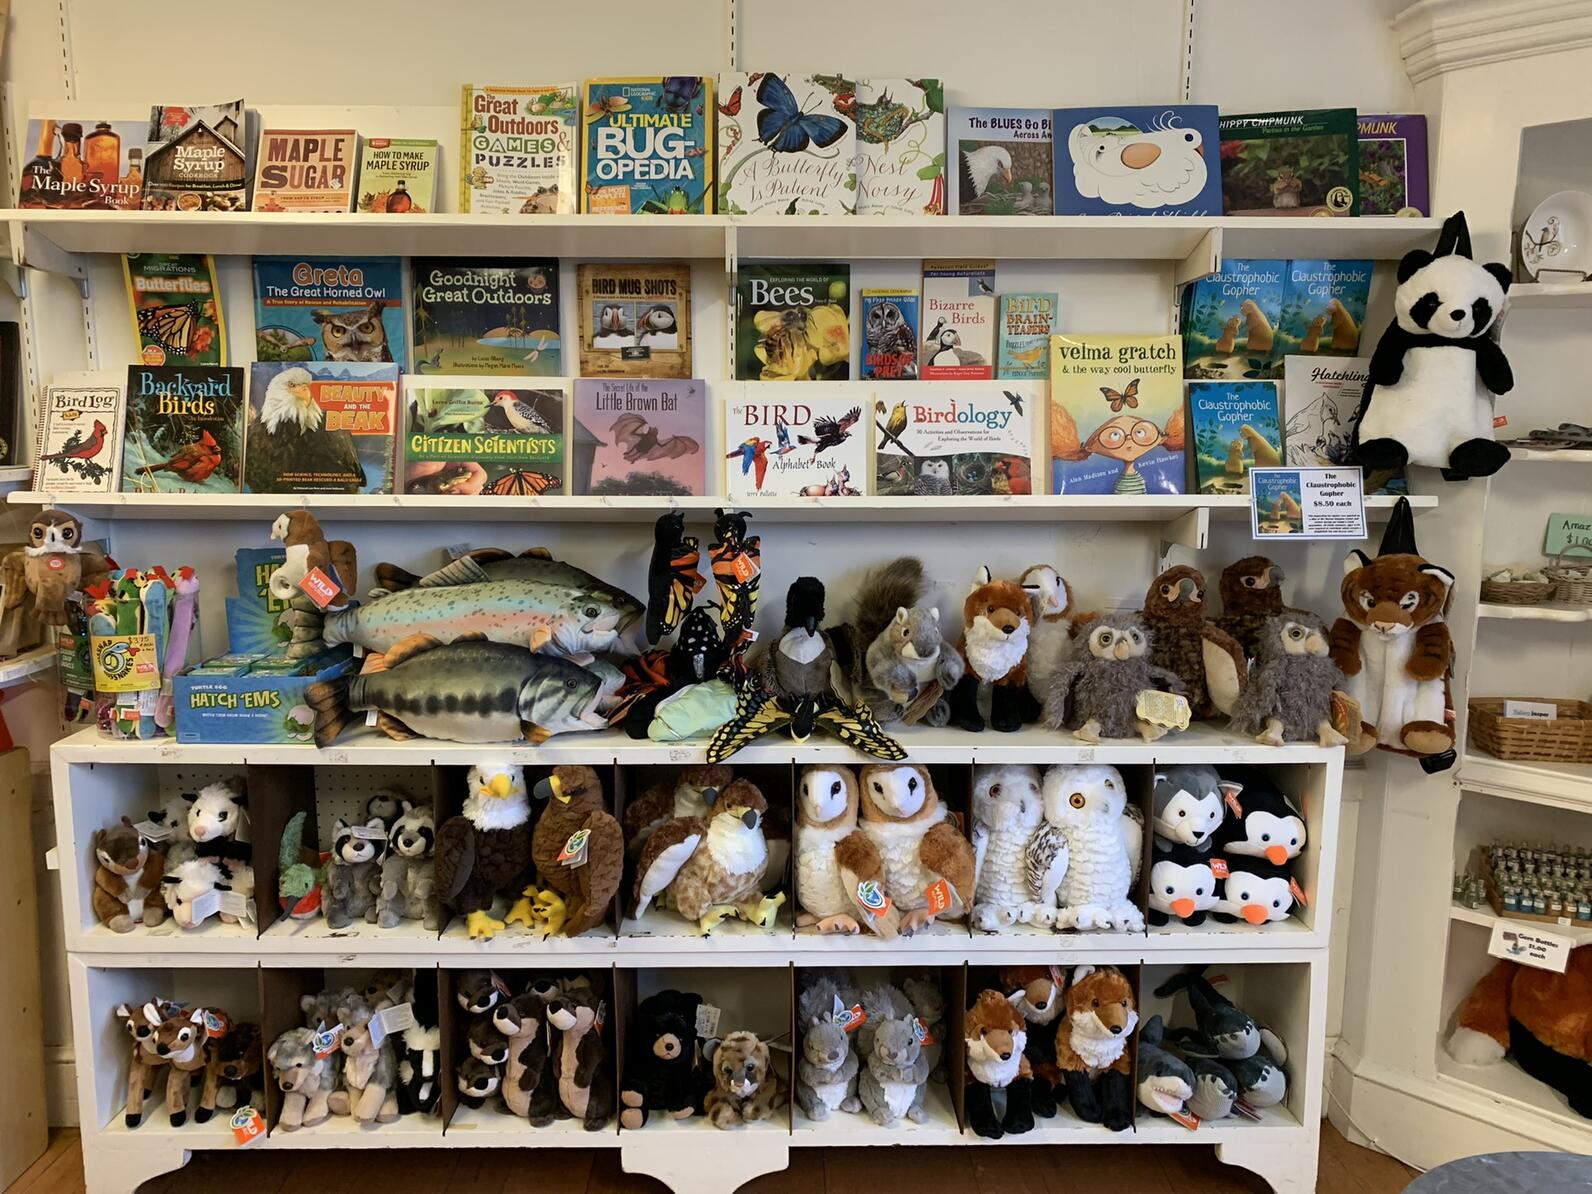 Children's books and stuffed animals